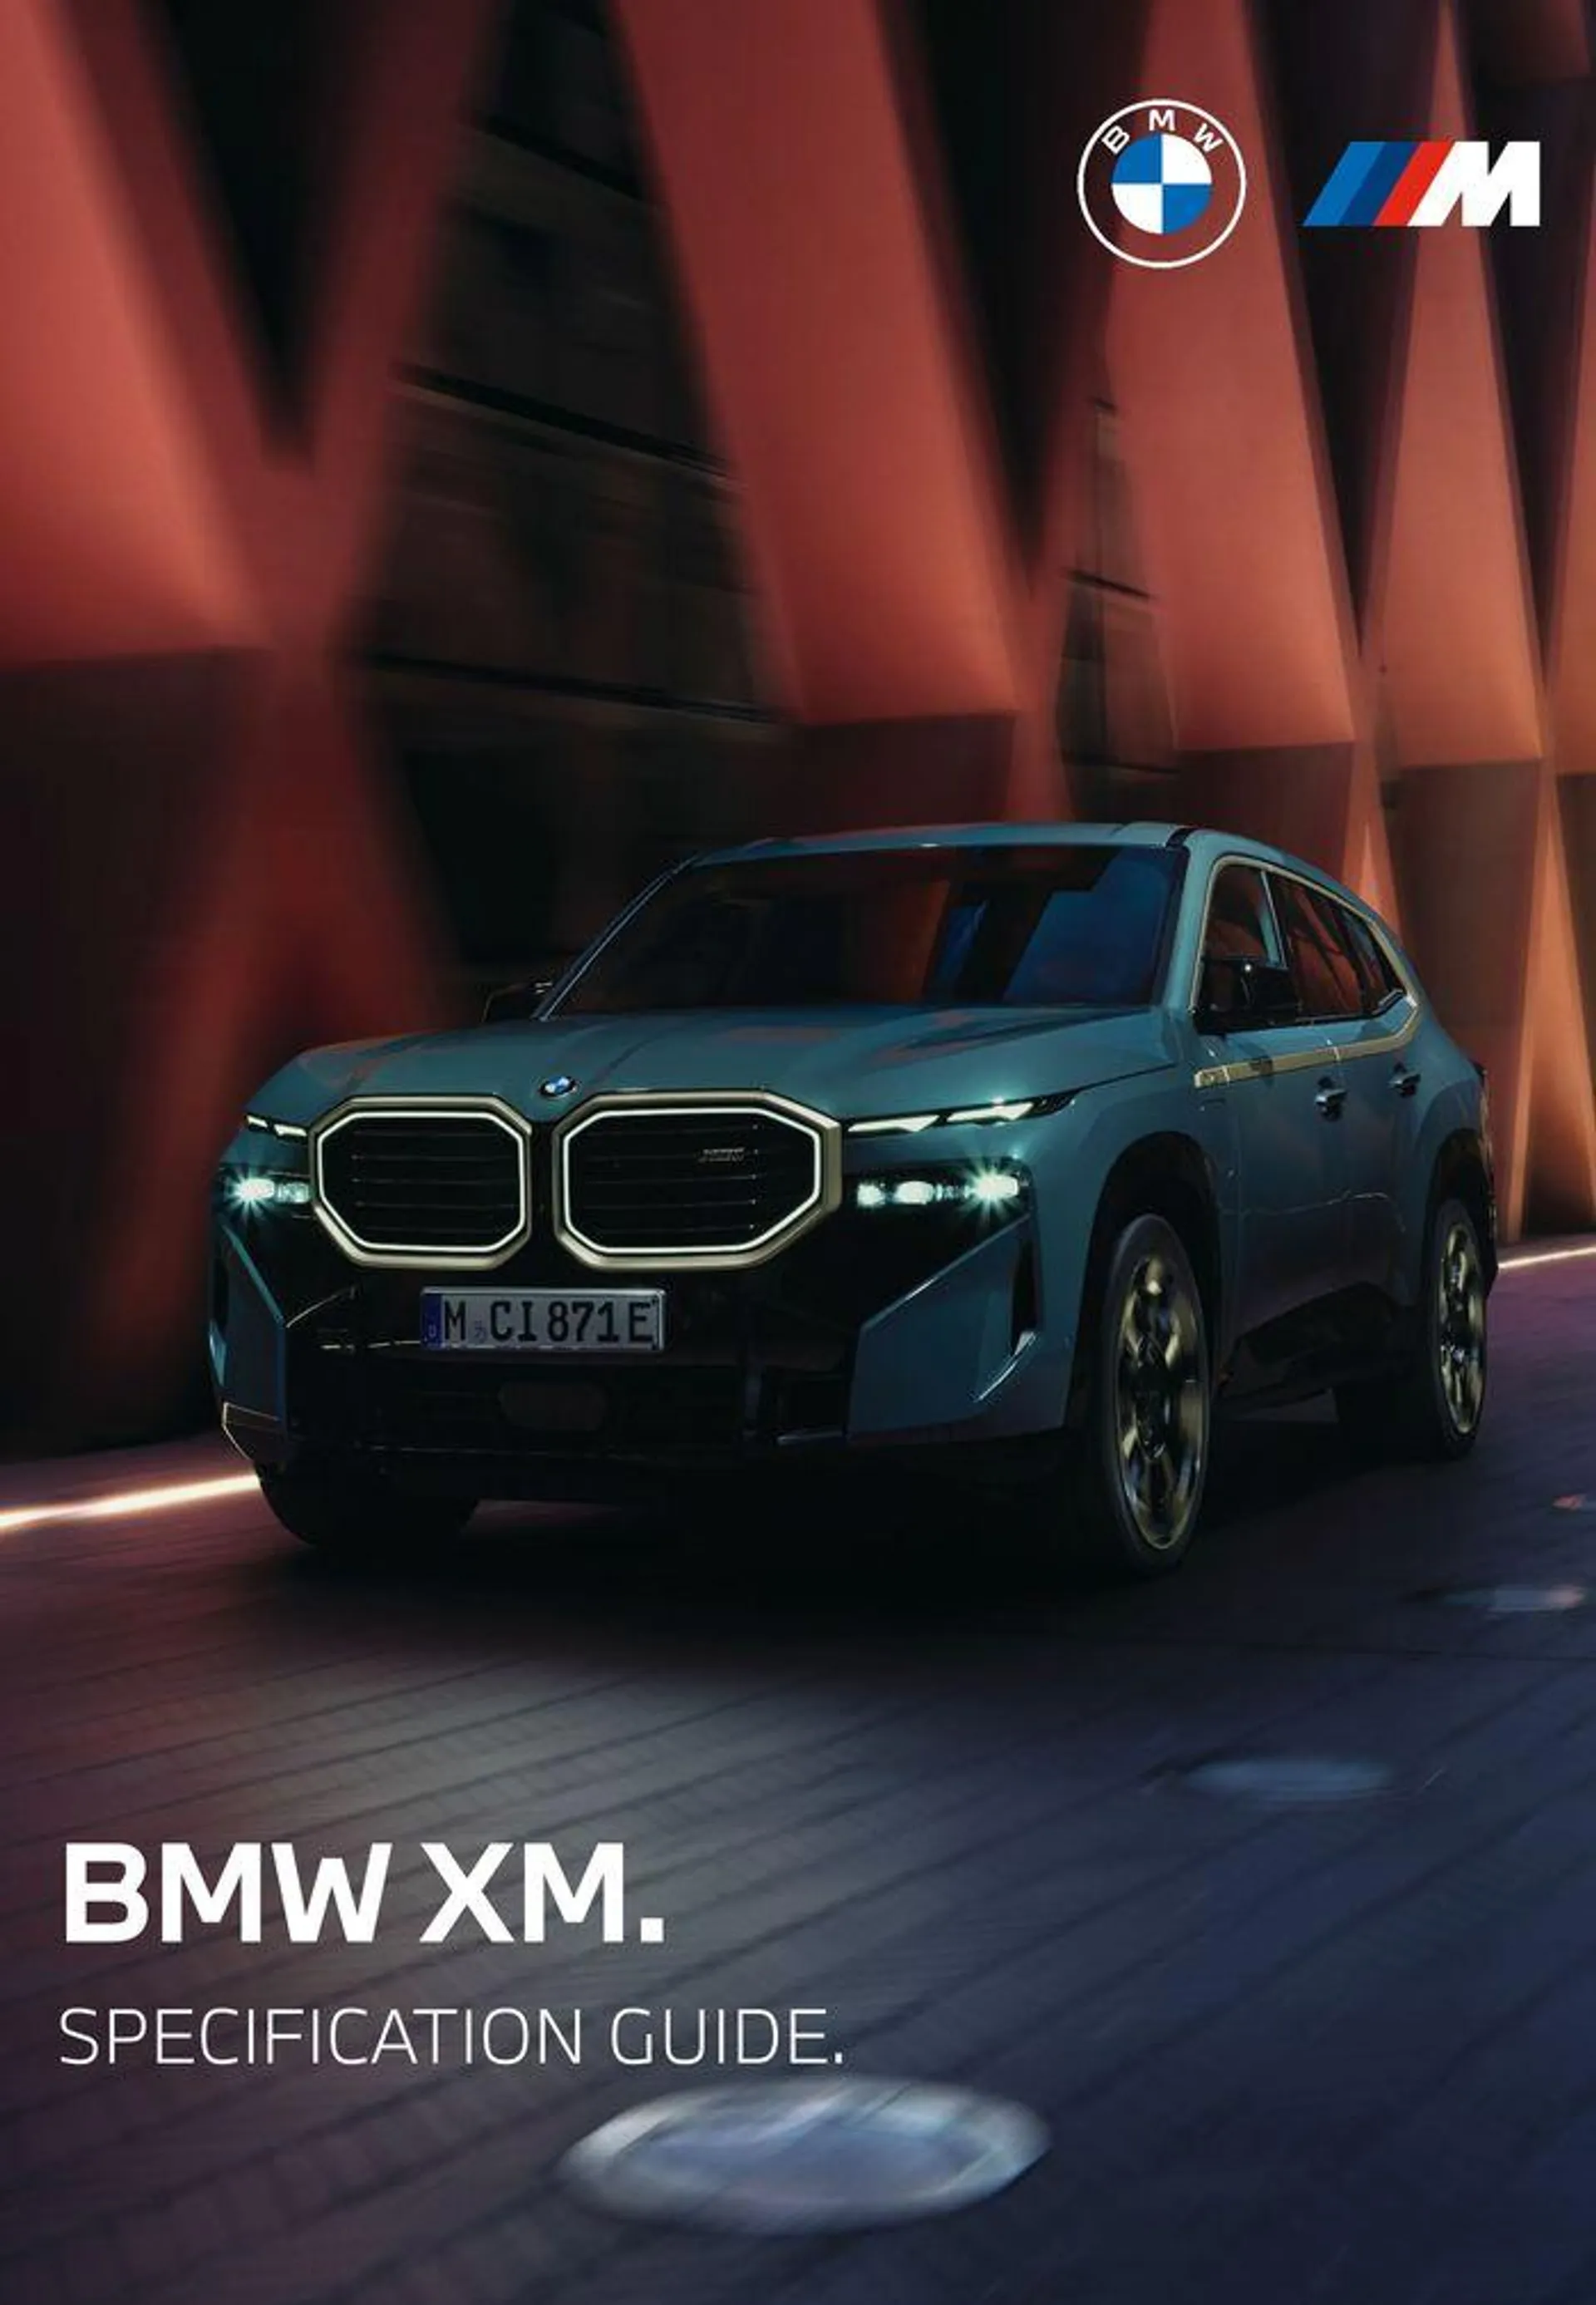 The BMW XM - 1